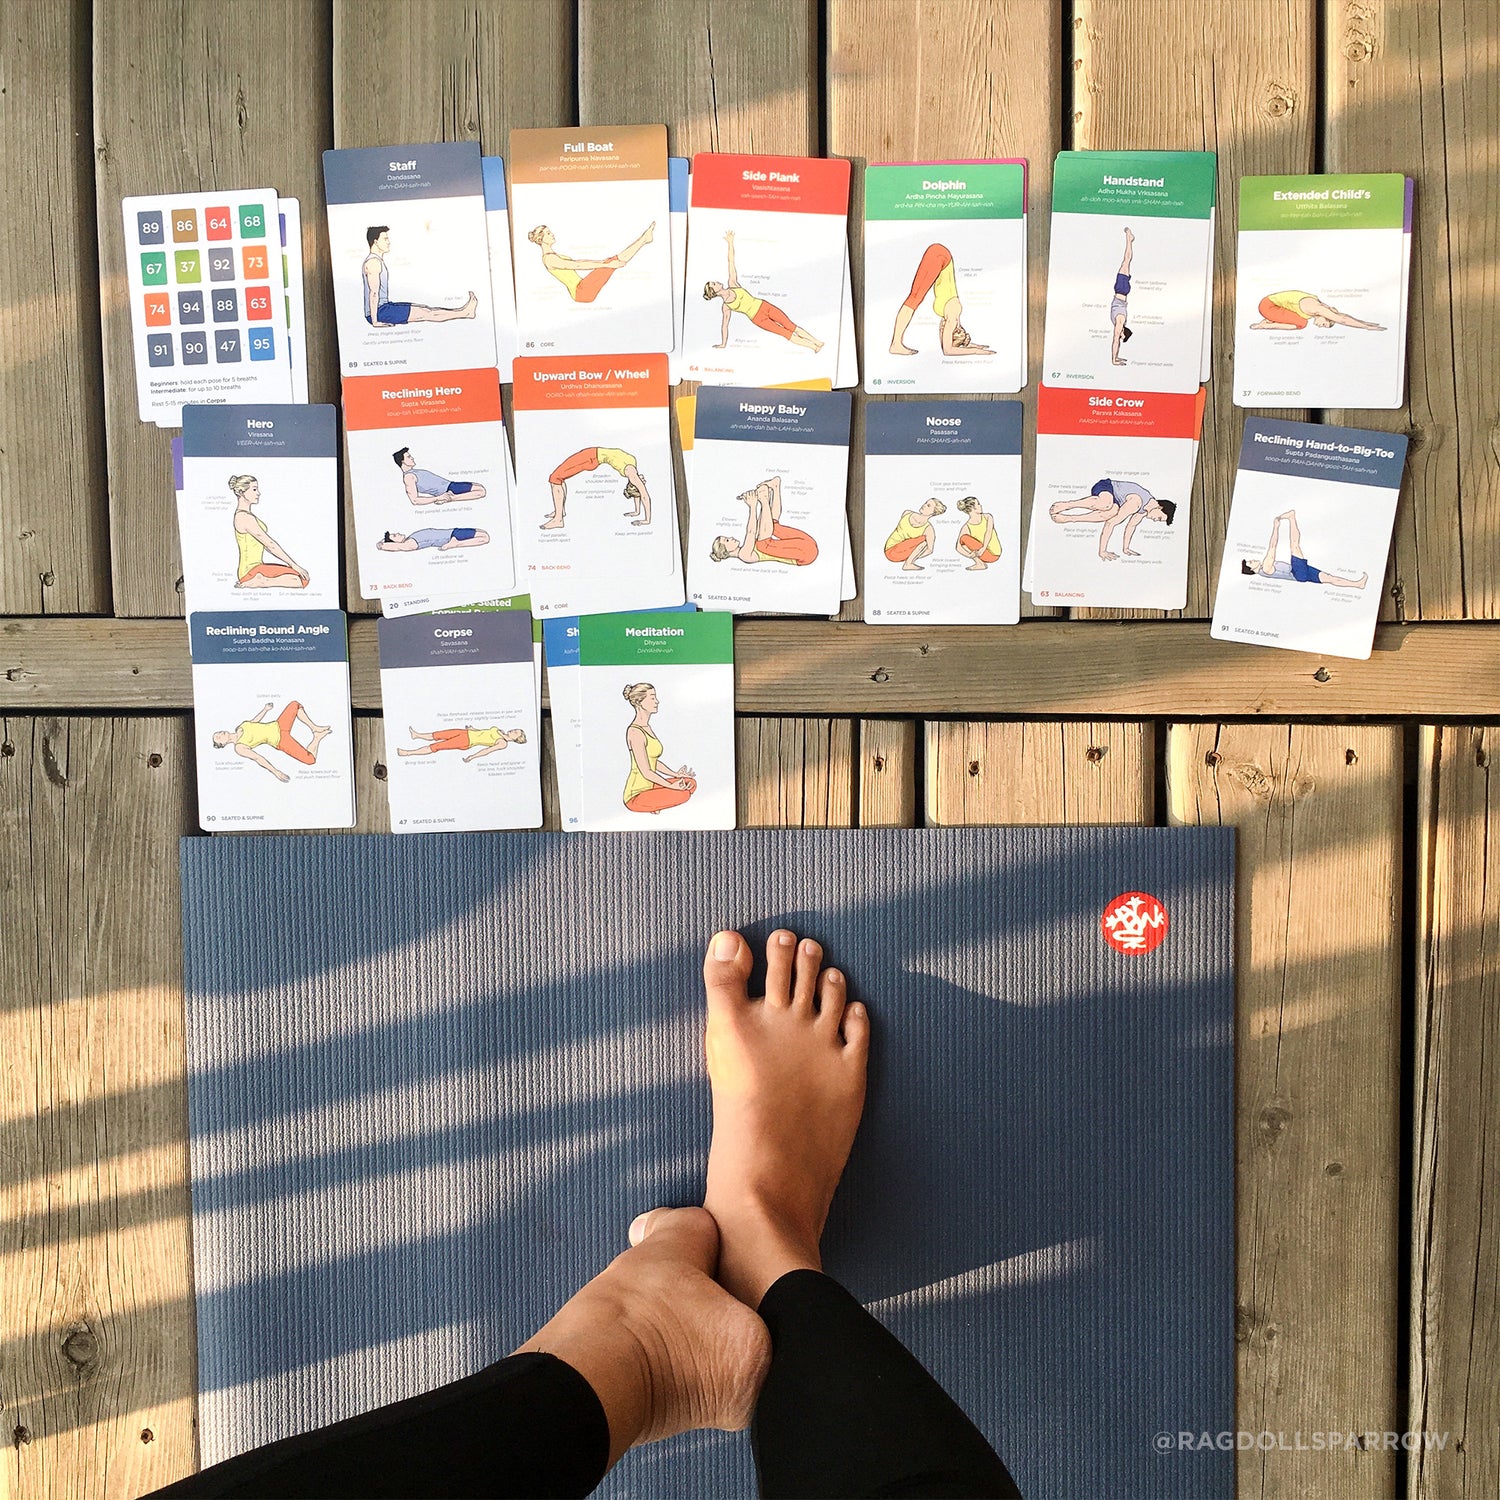 YOGA SEQUENCE CARDS Yoga Pose Cards, Sequence Cards, Asana Cards, Yoga  Flash Cards, Yoga Deck 